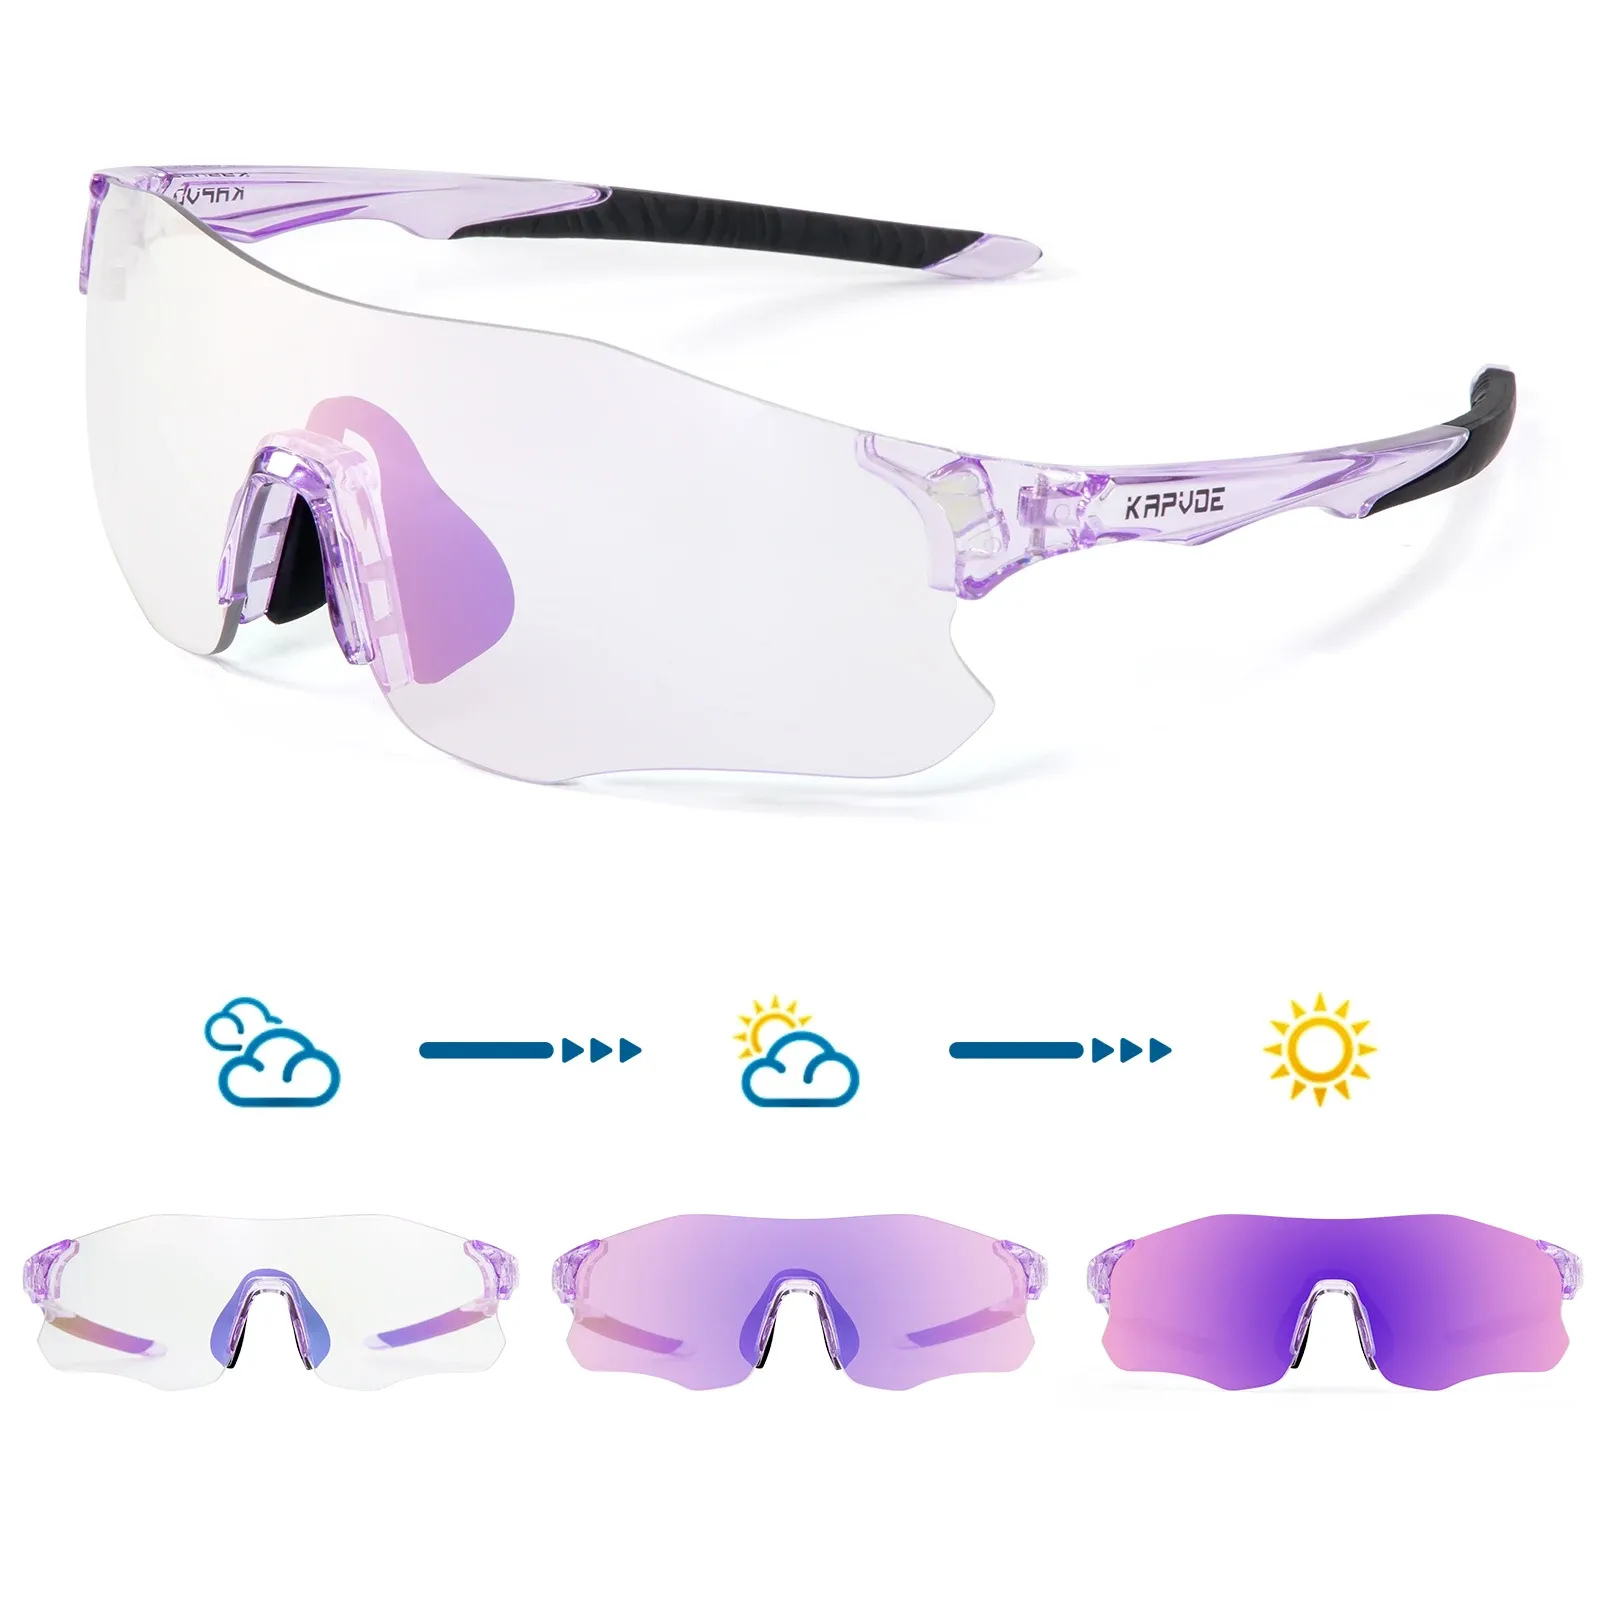 Zonnebrillen Kapvoe paarse fotochrome hardloop zonnebril buiten sportfiets marathon fietsen bril mountain bicycle bril bril bril bril